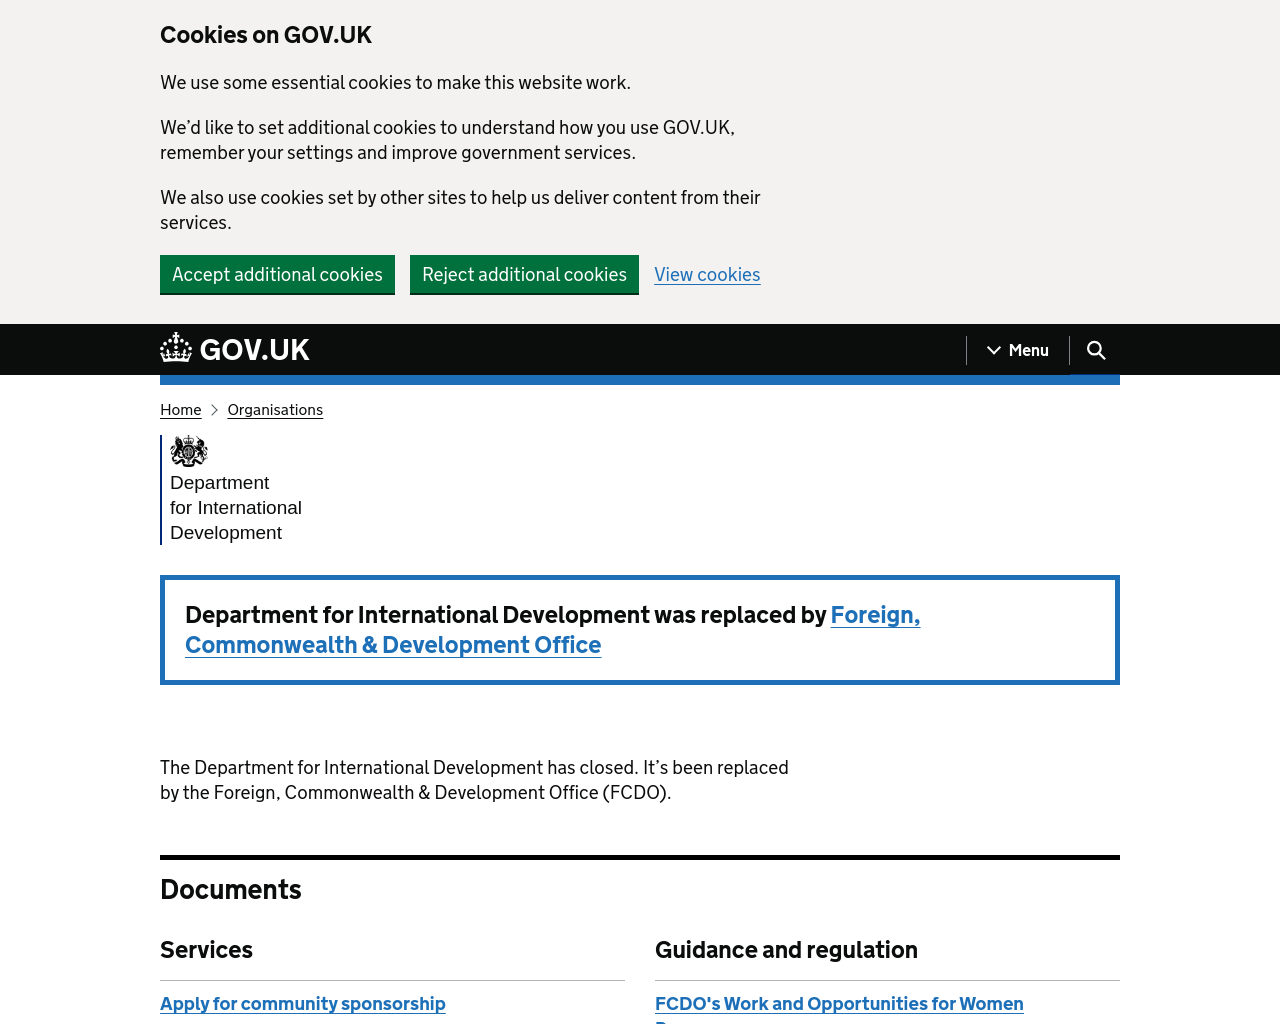 dfid.gov.uk